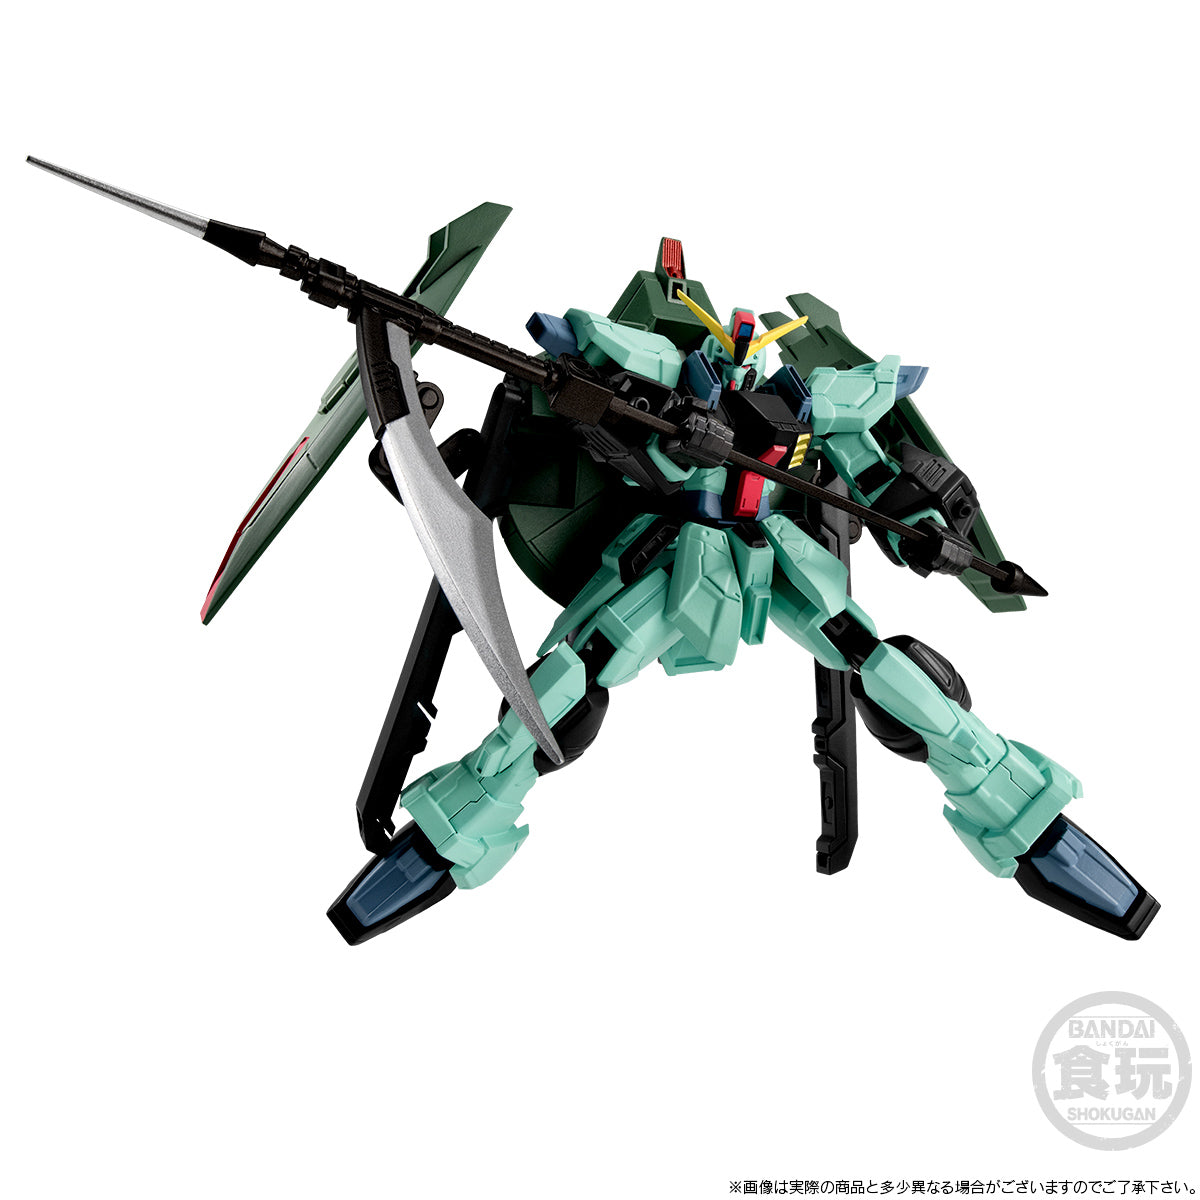 Bandai - Shokugan - Mobile Suit Gundam Seed - G Frame FA Aku No. 3 Heiki Set - Marvelous Toys